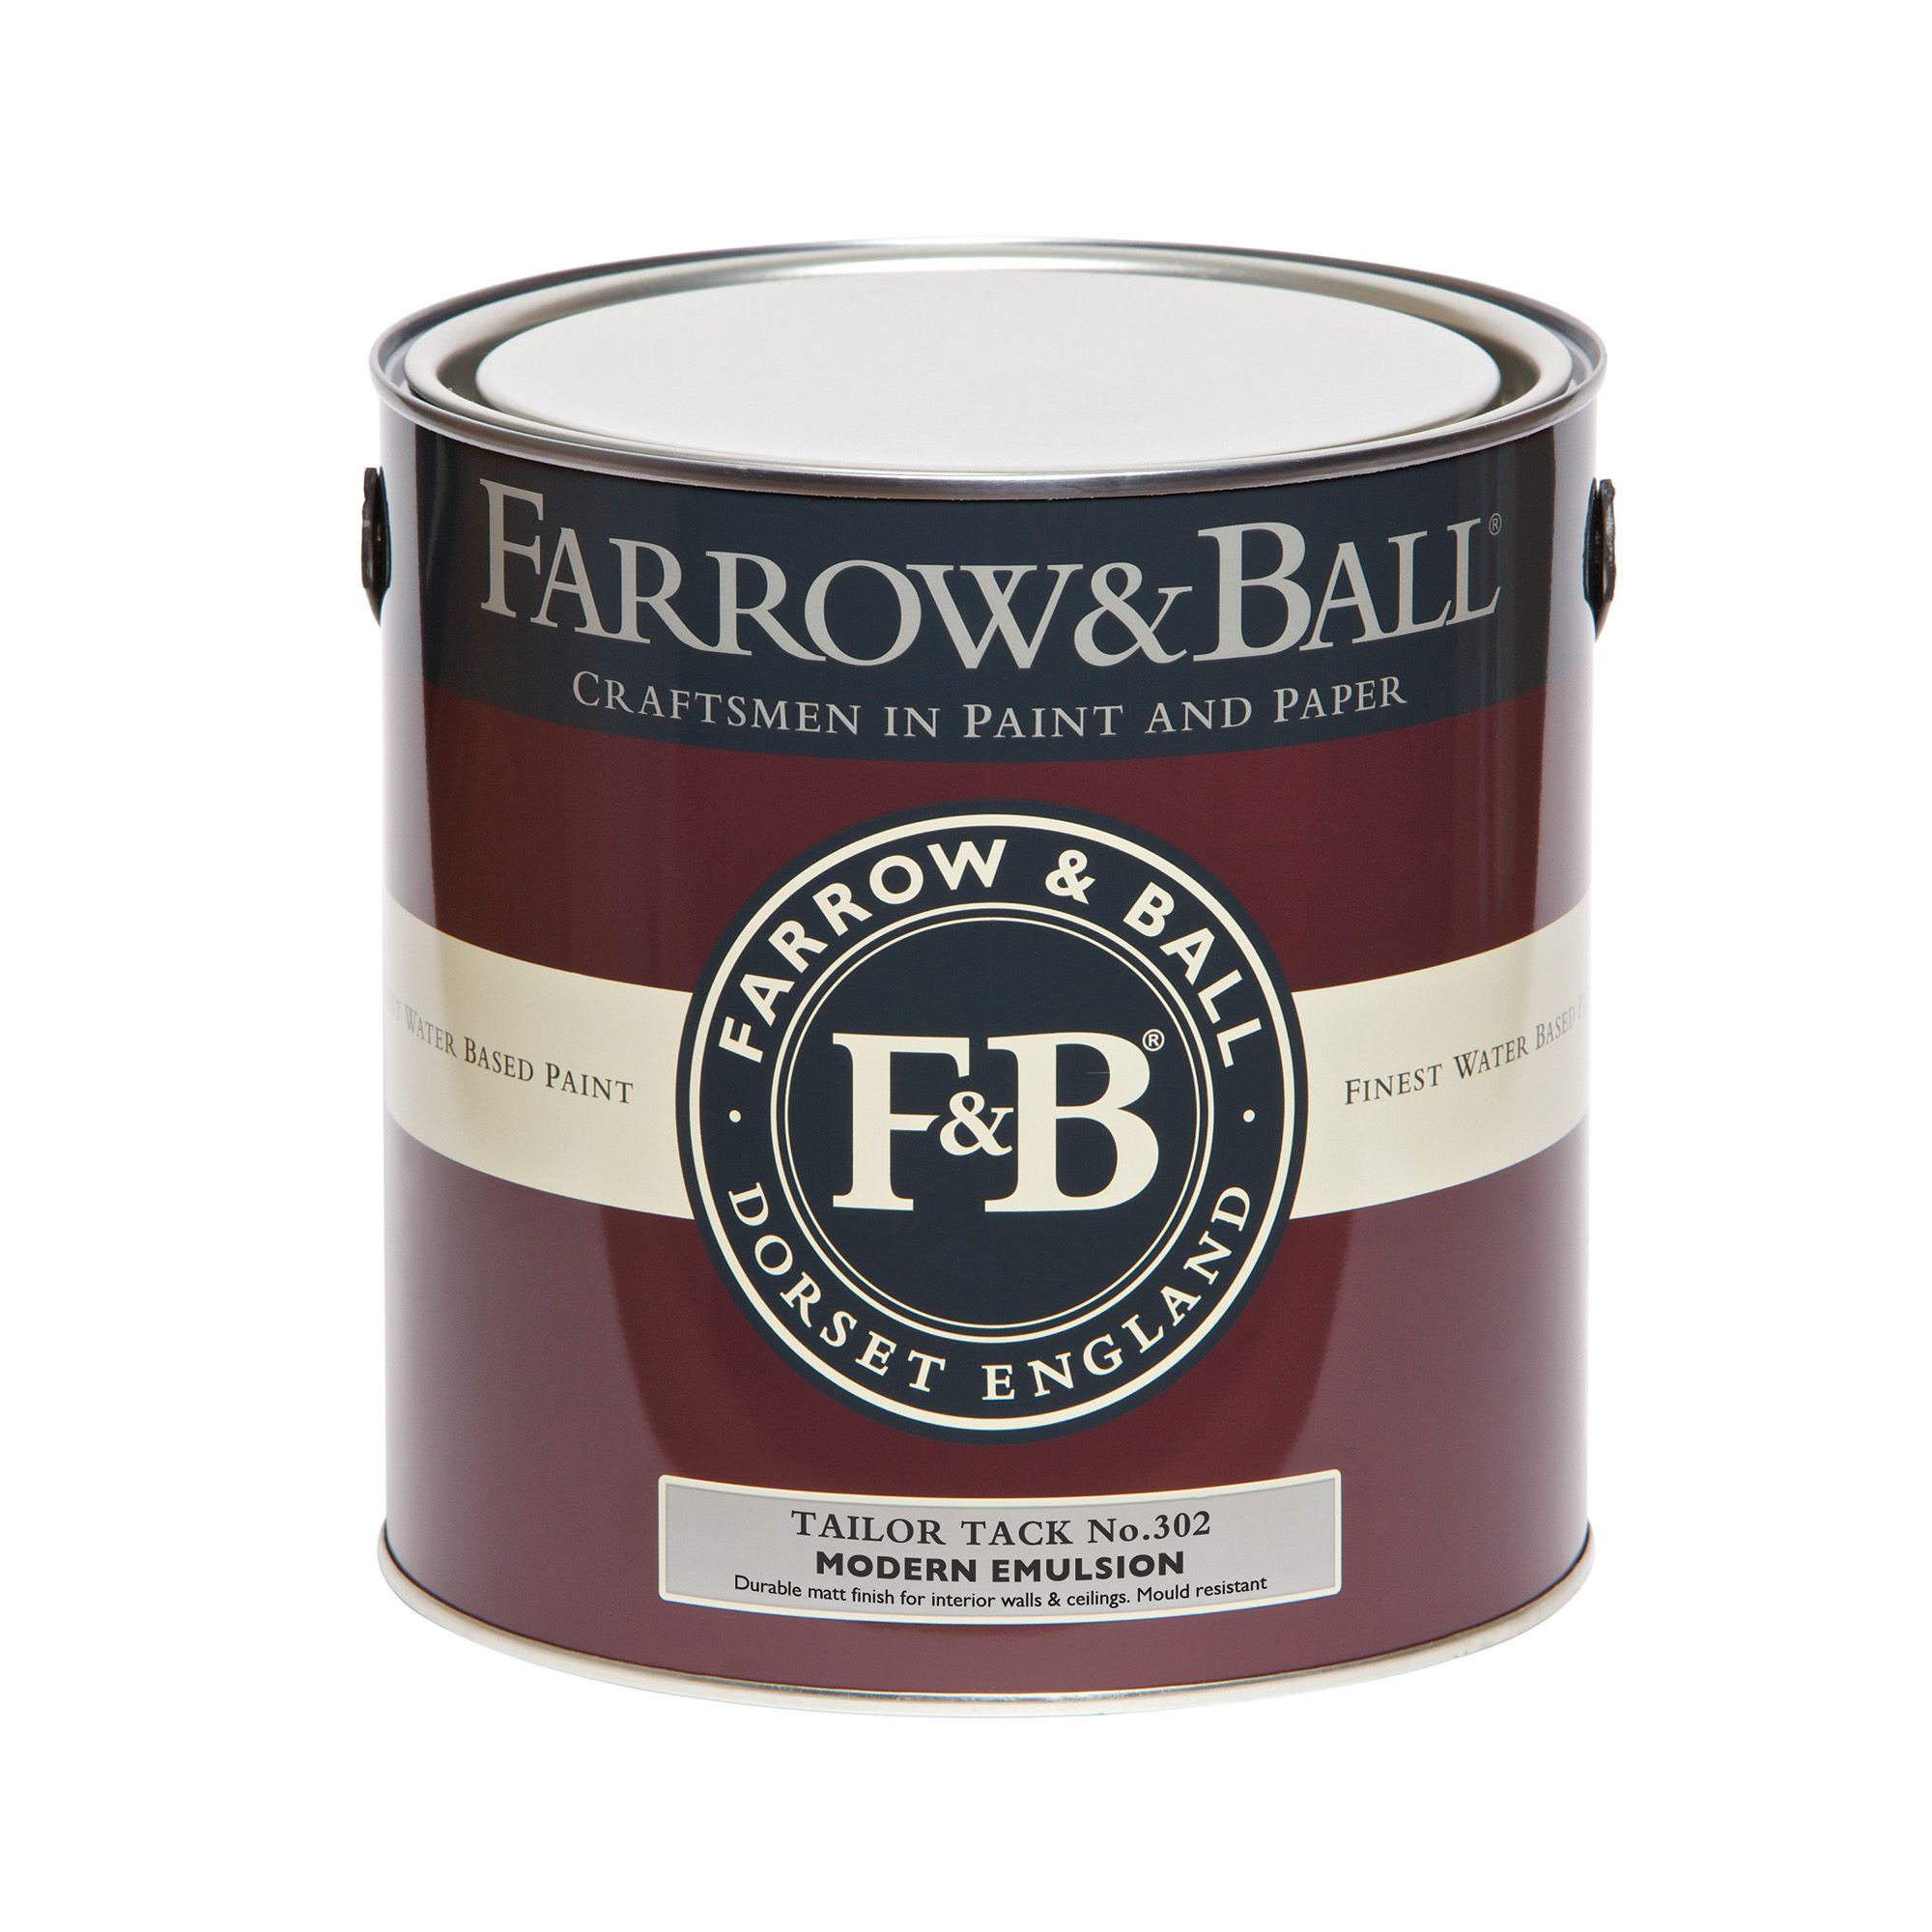 Farrow & Ball Modern Tailor Tack No.302 Matt Emulsion paint, 2.5L